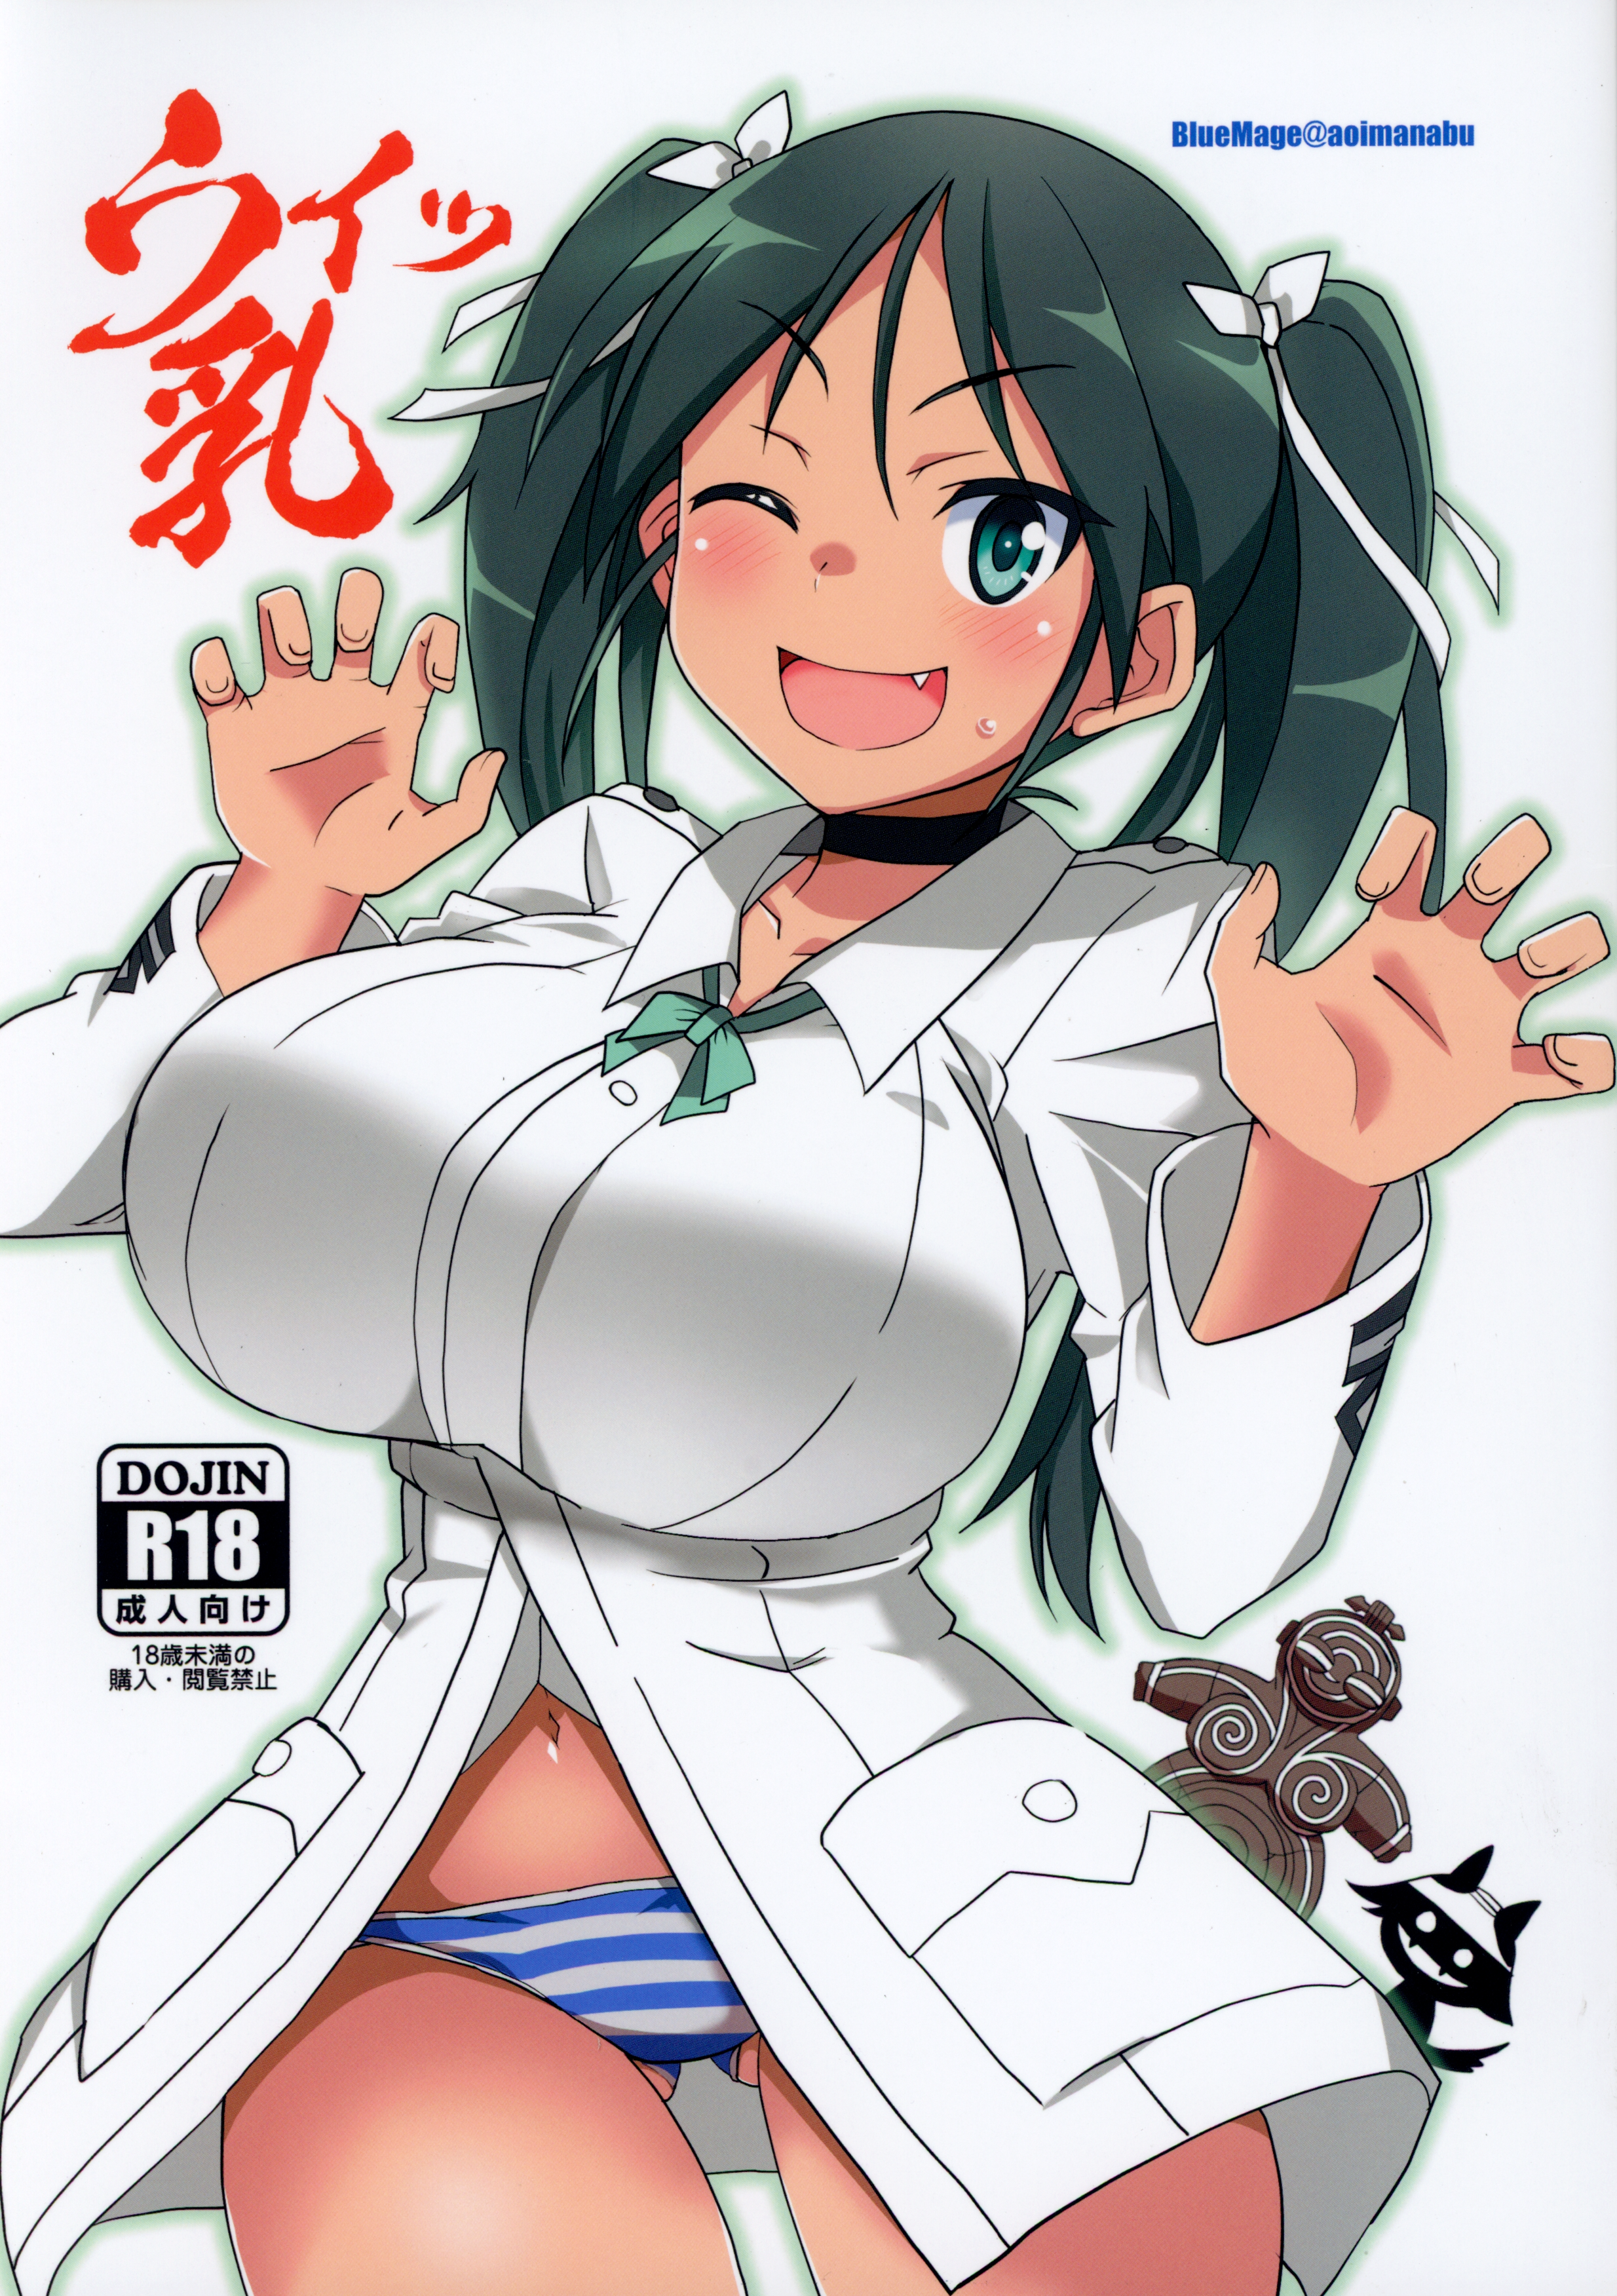 Anime Witch Porn - Strike Witches - Hentai Manga, Doujins, XXX & Anime Porn